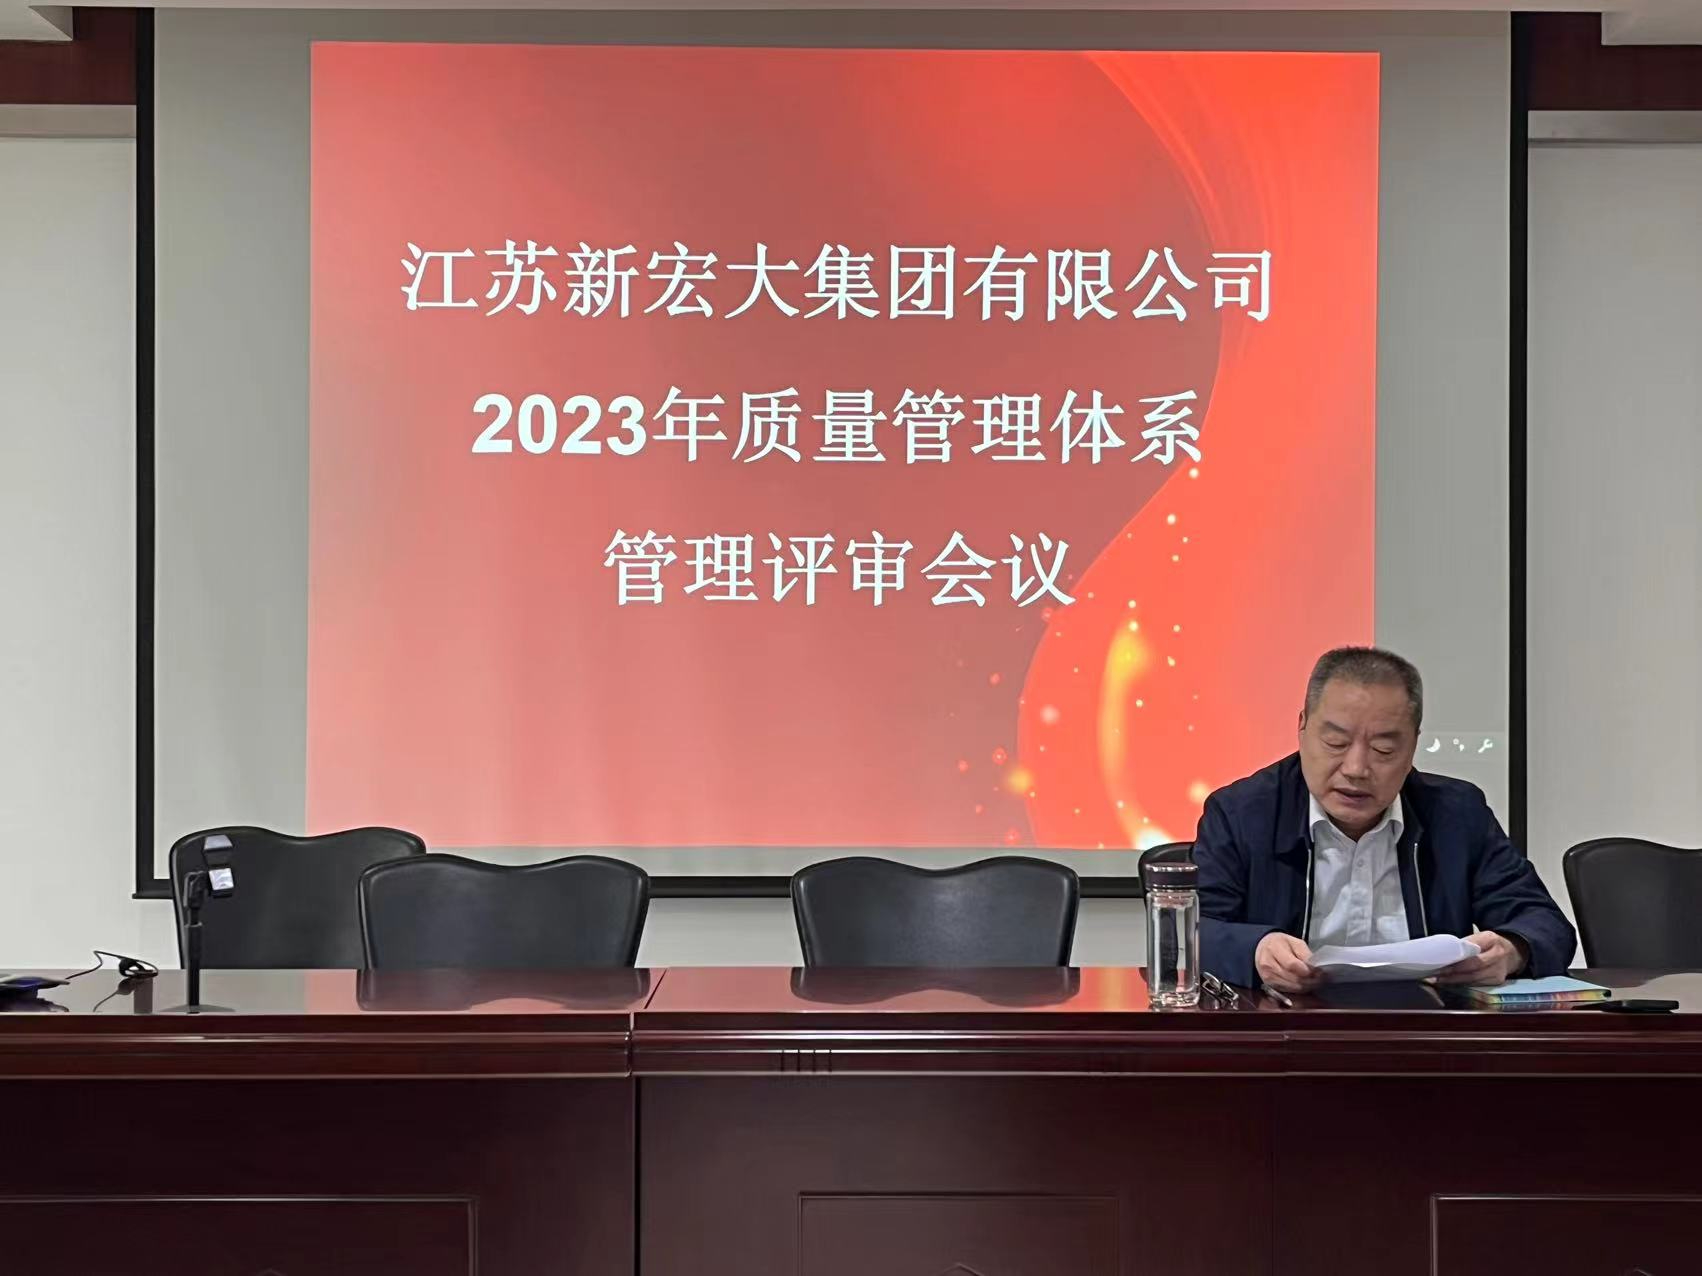 热烈祝贺江苏新宏大集团有限公司2023年质量管理体系管理评审会议胜利召开